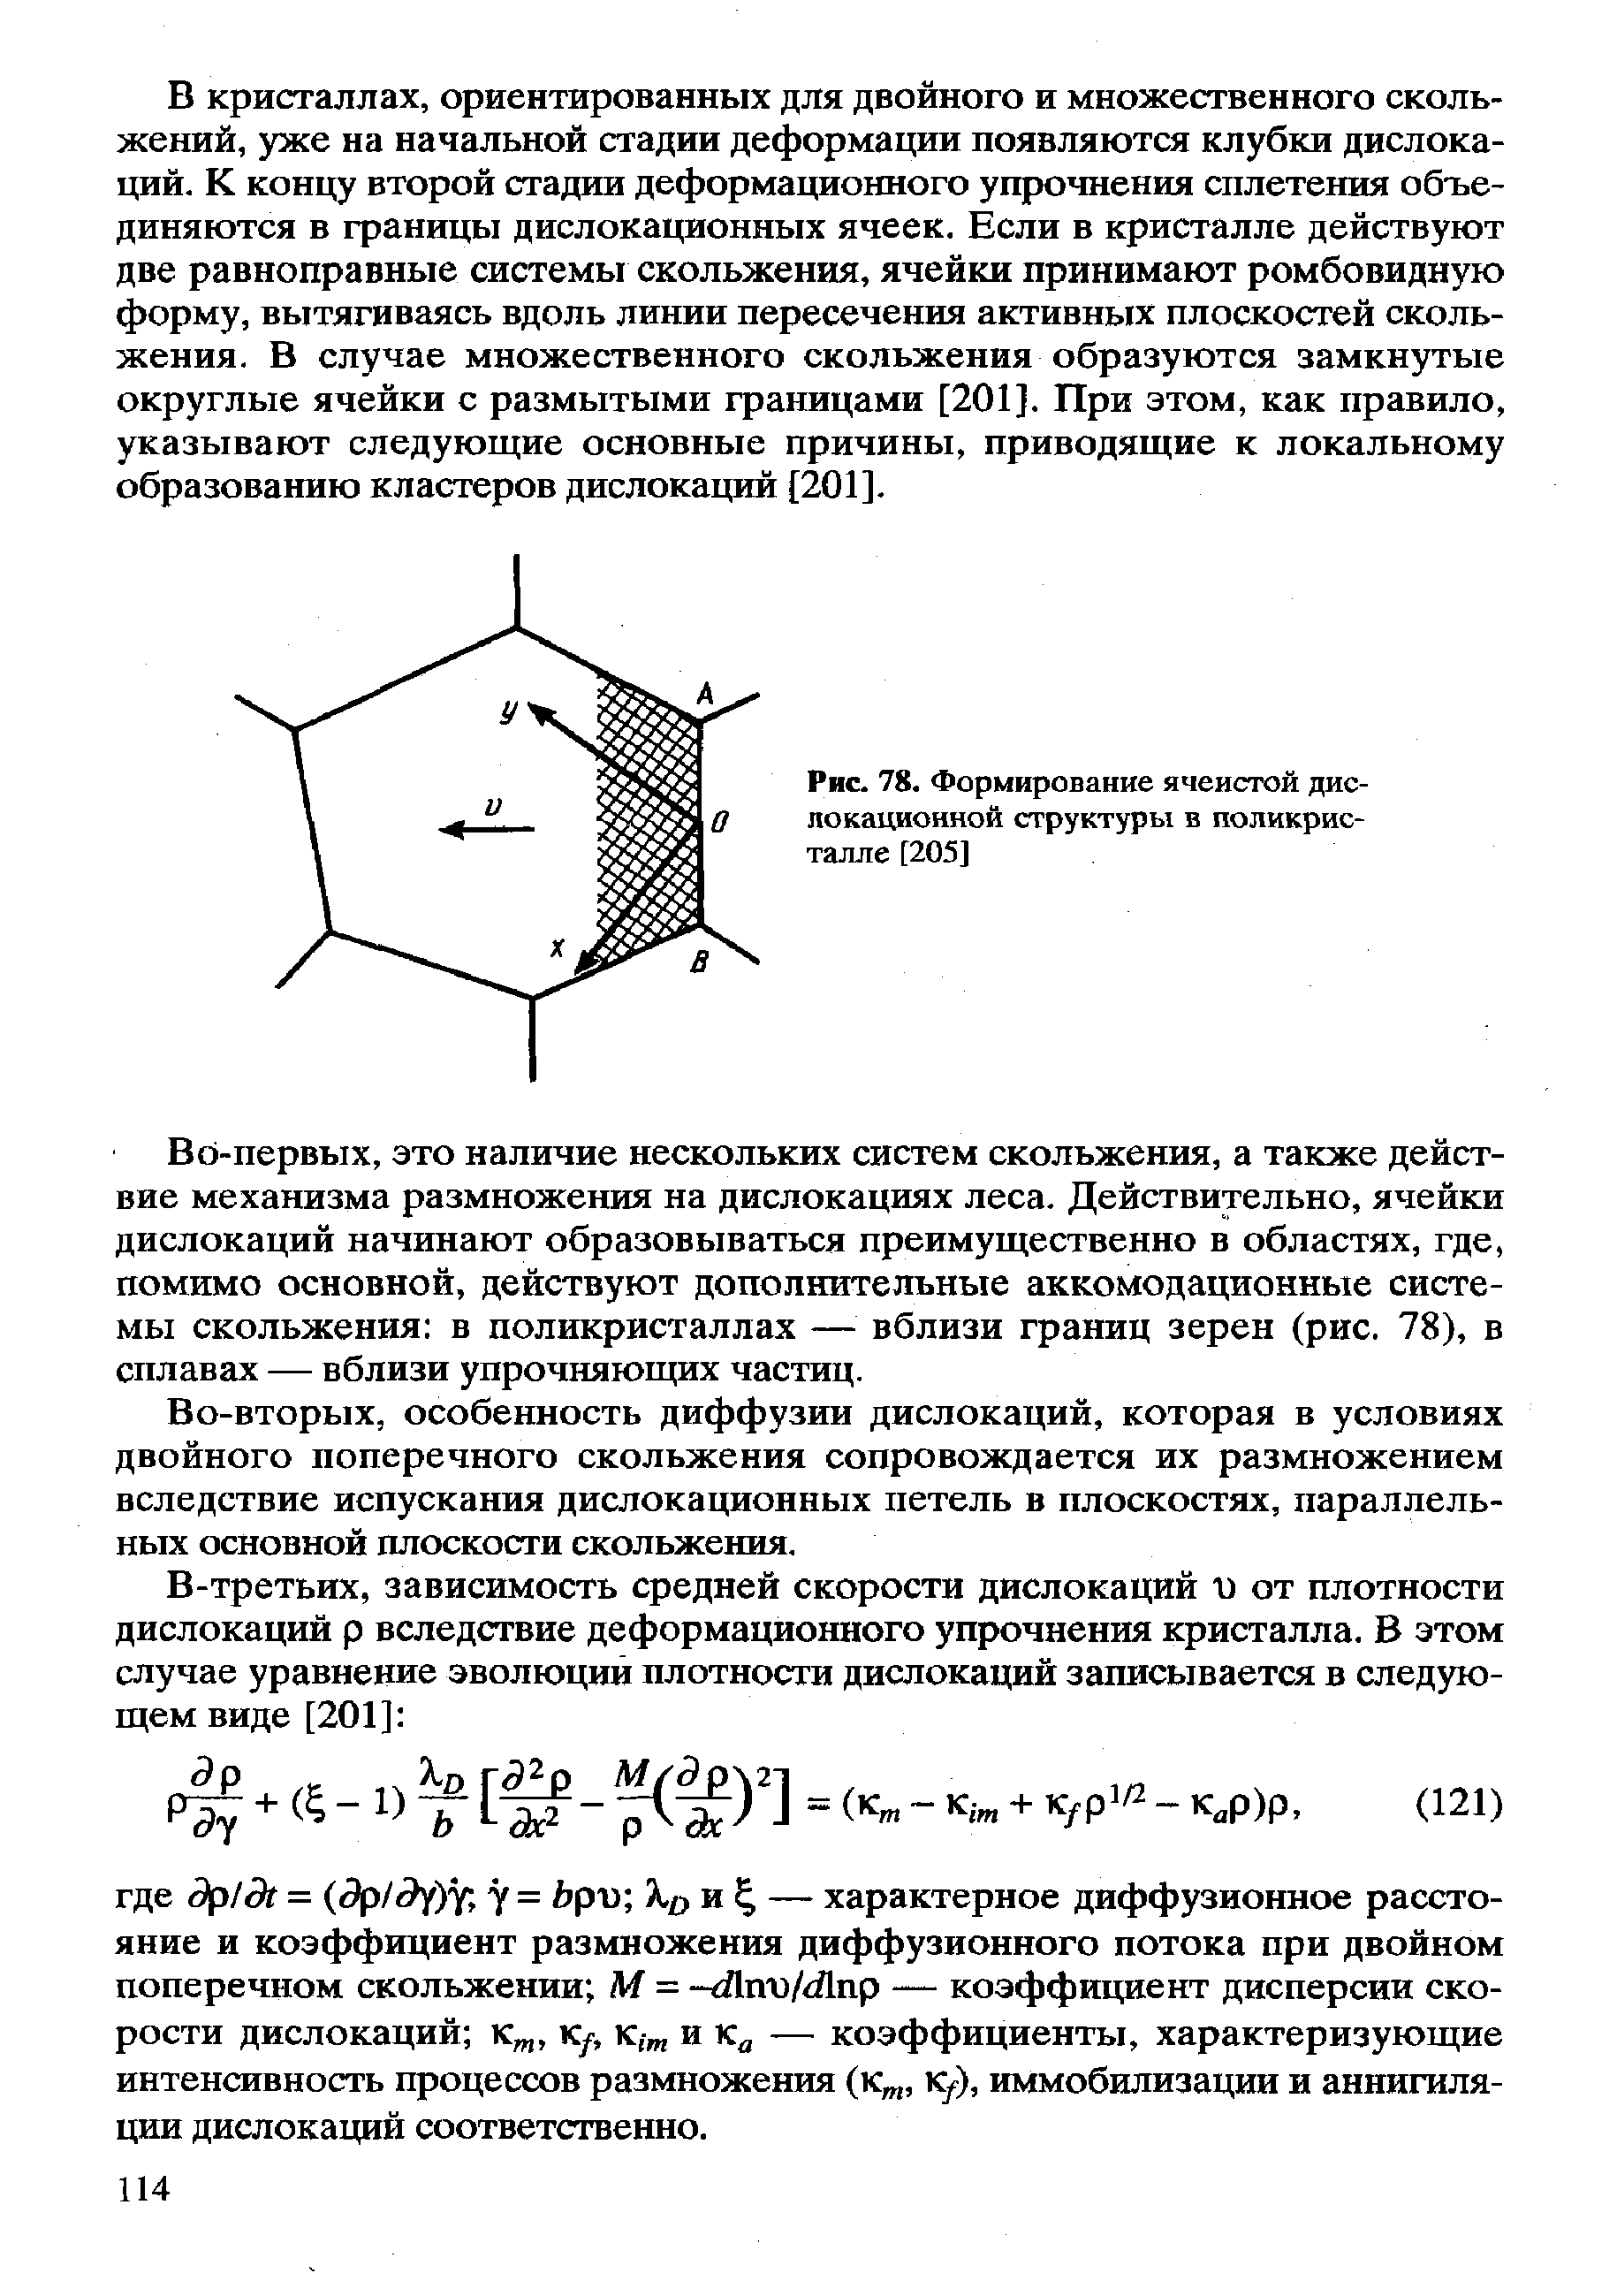 Рис. 78. Формирование ячеистой дислокационной структуры в поликристалле [205]
